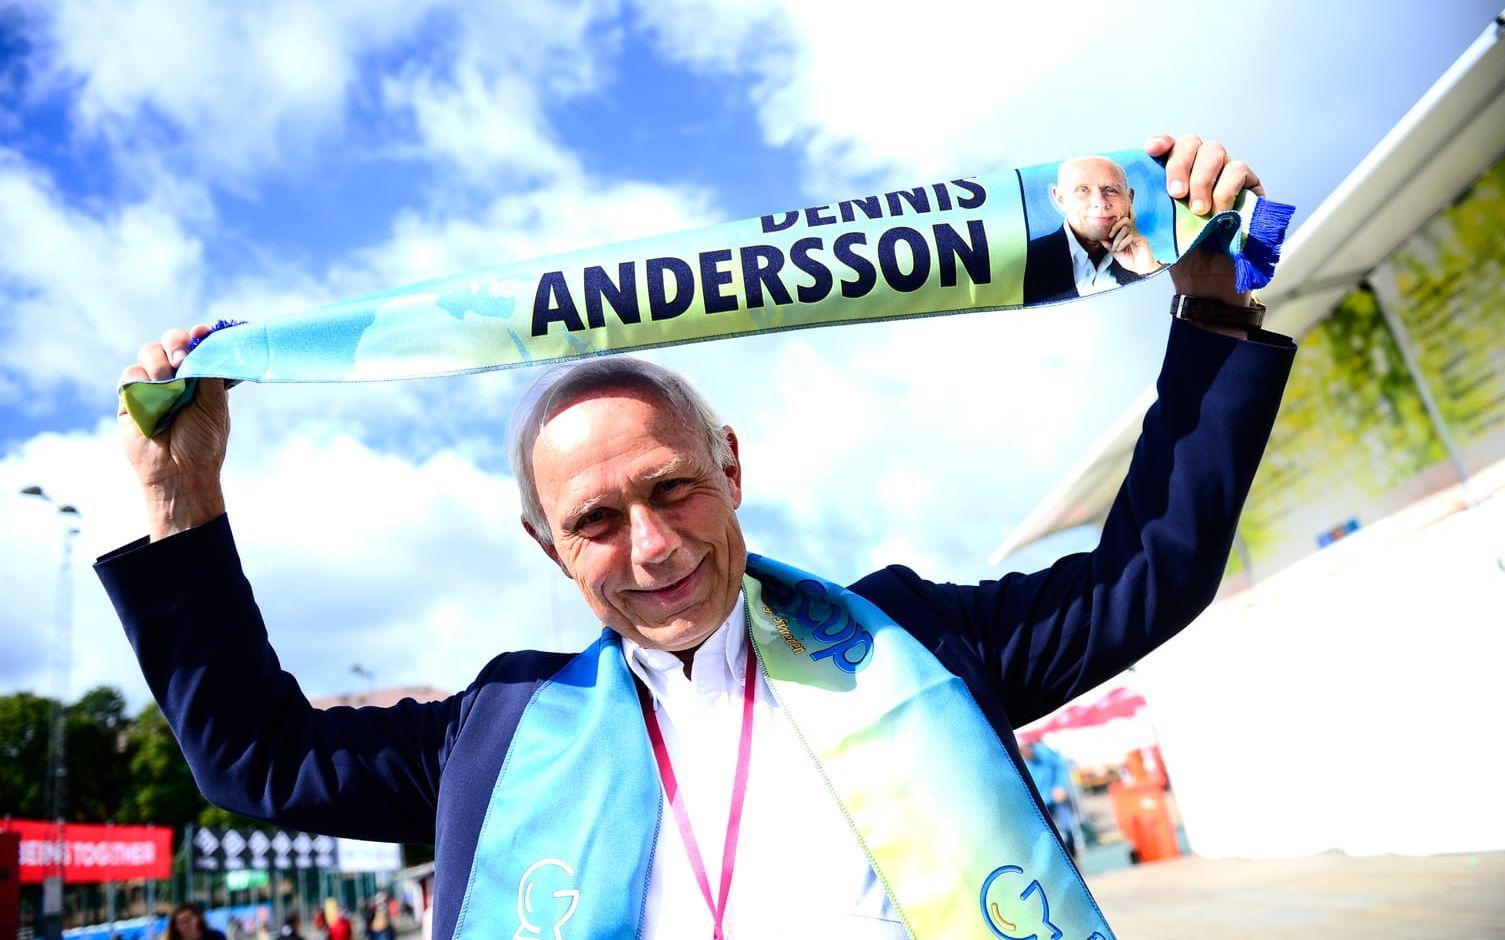 Dennis Andersson, turneringens generalsekreterare var på plats på Heden. Foto: Jenny Ingemarsson